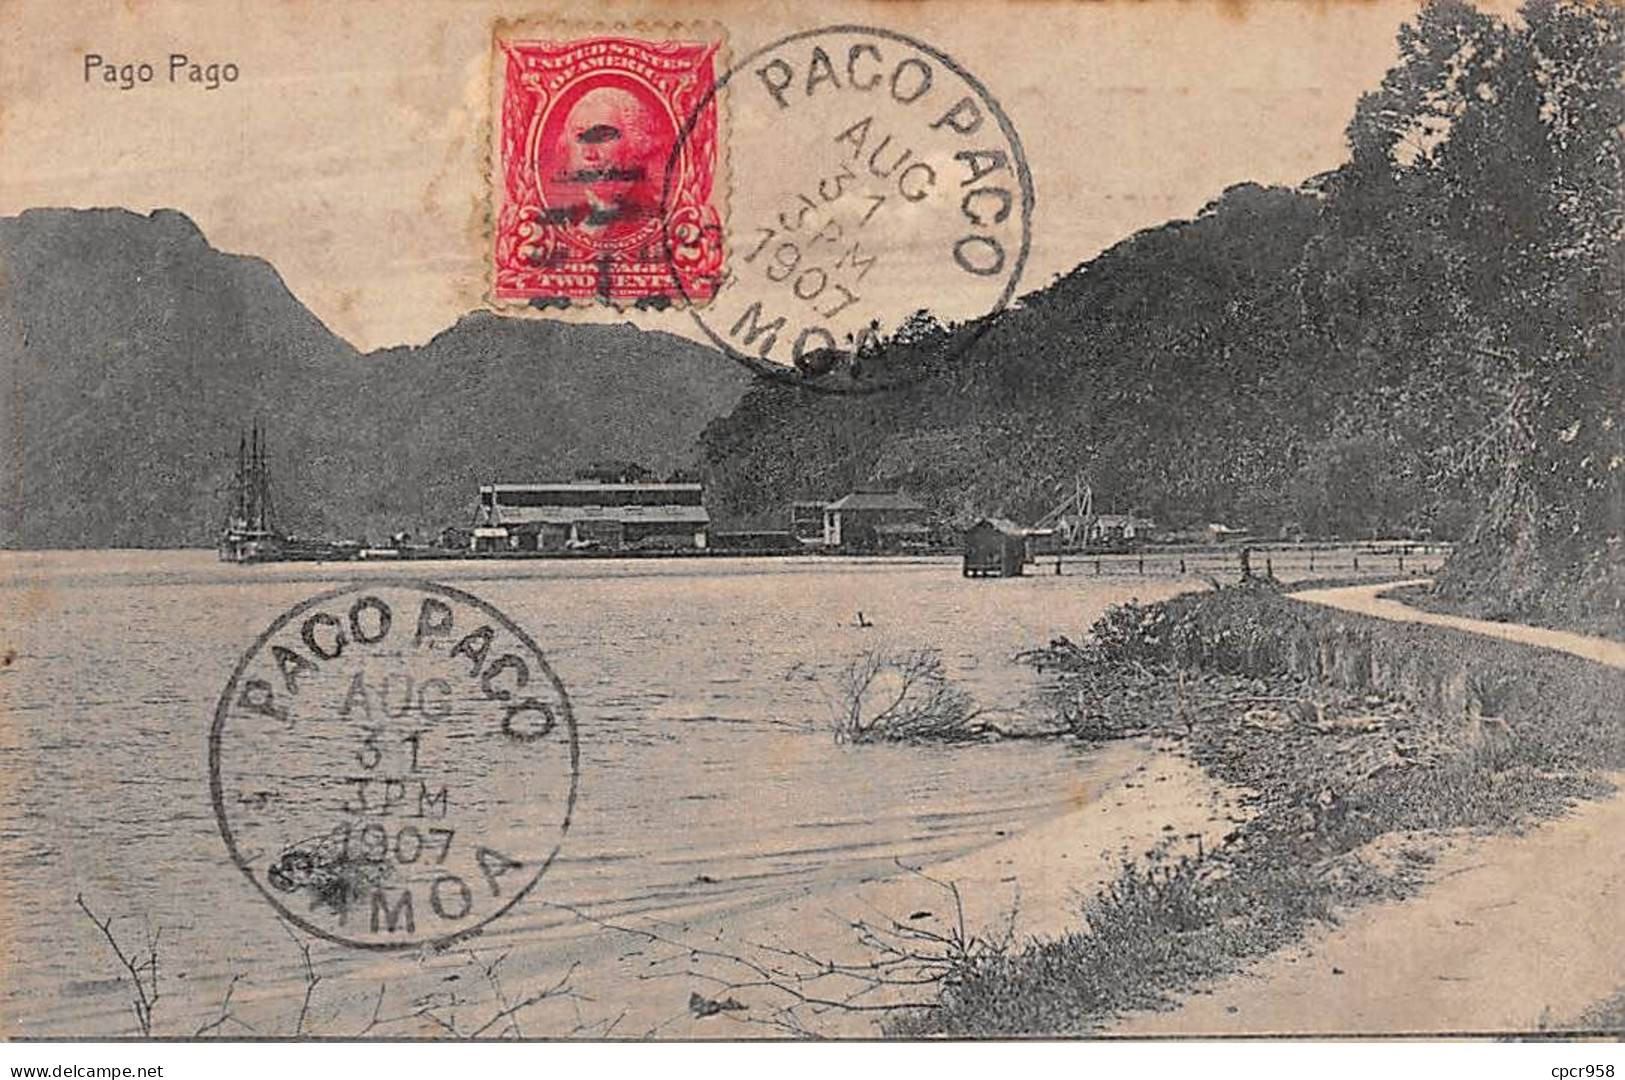 Samoa Américaine - N°78740 - Pago Pago - AFFRANCHISSEMENT DE COMPLAISANCE - Amerikaans-Samoa